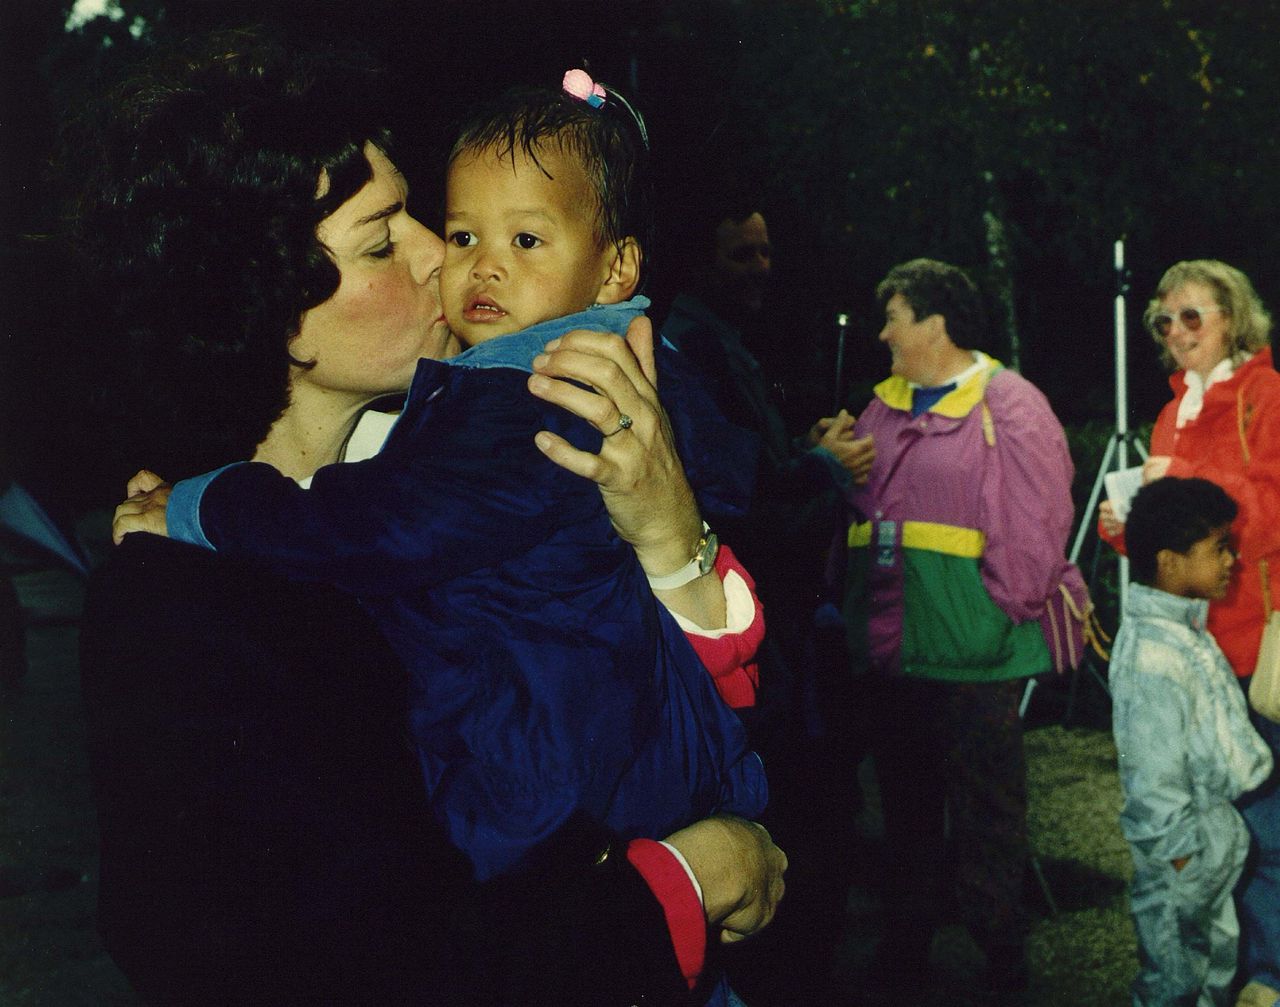 Bijeenkomst van ouders van adoptiekinderen uit ontwikkelingslanden in de Flevohof in 1989.